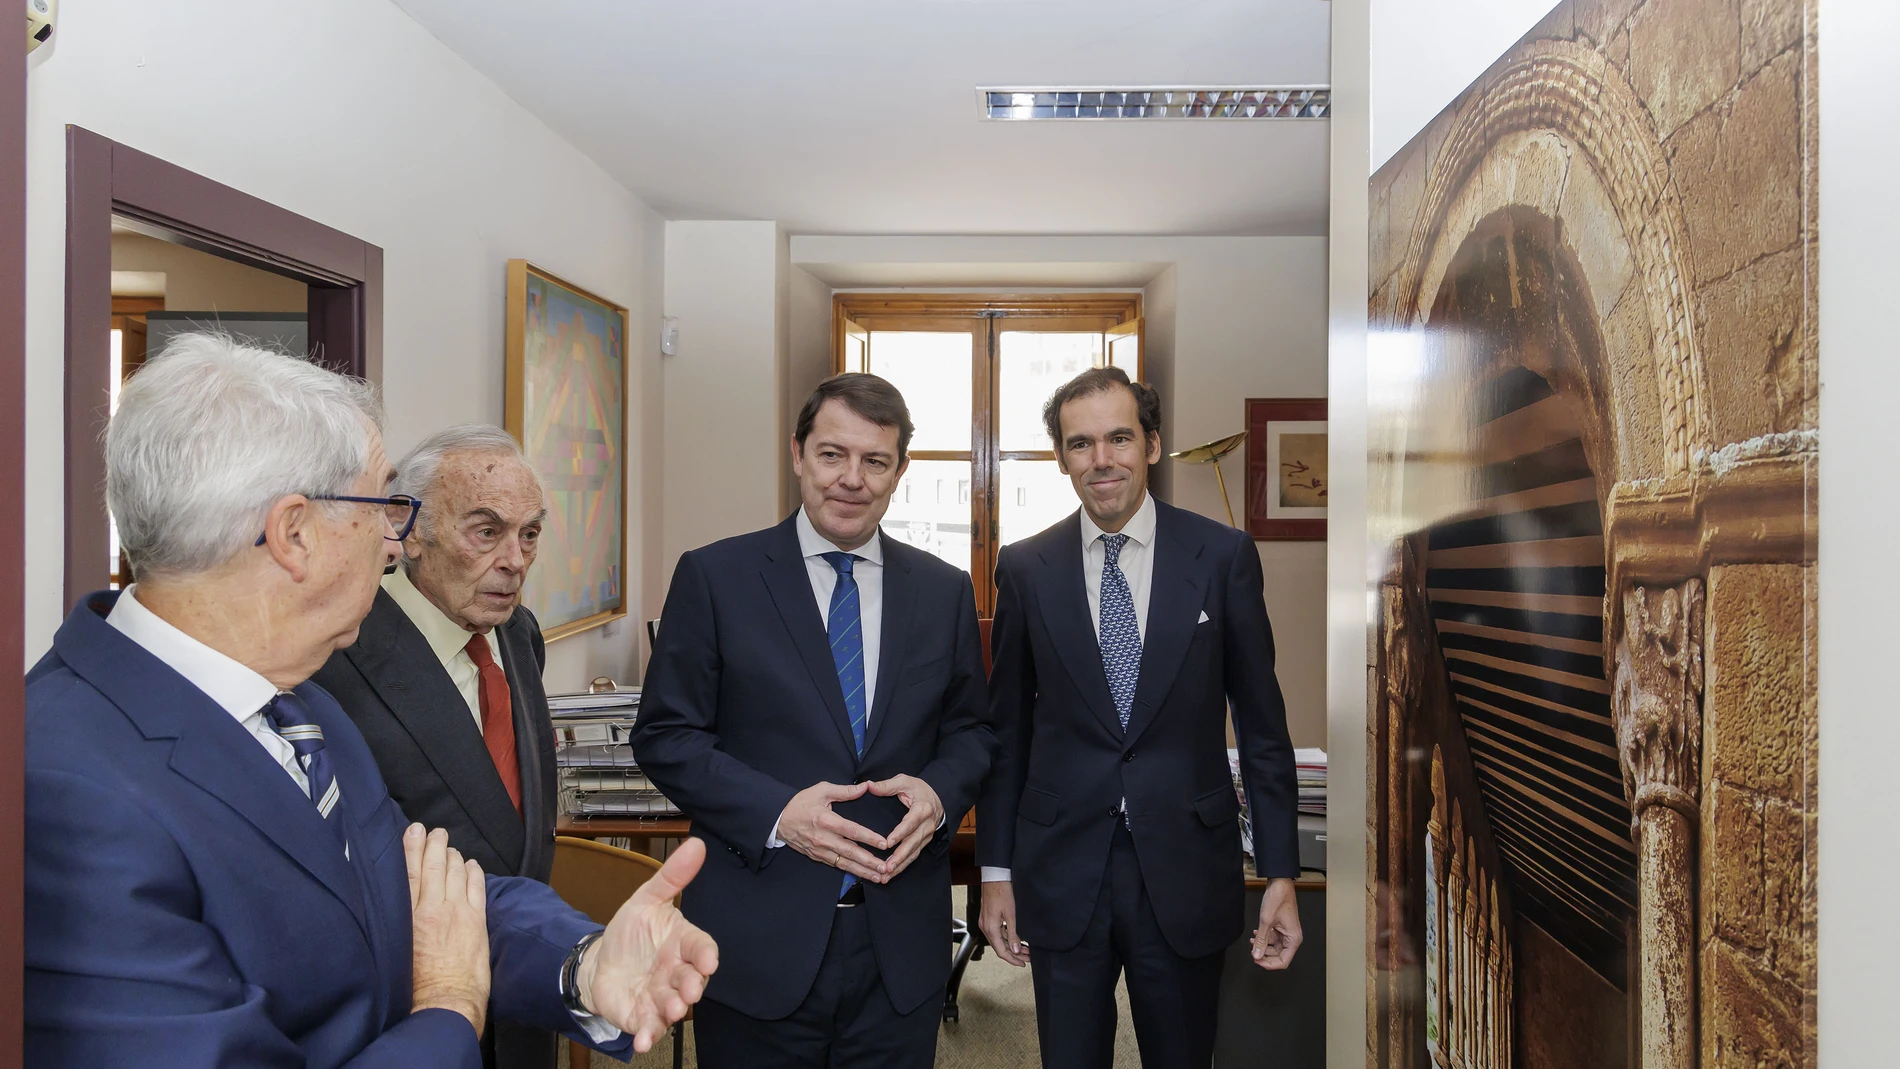 El presidente de la Junta visita la sede de la Fundación Duques de Soria acompañado de Carlos Zurita y Rafael Benjumea